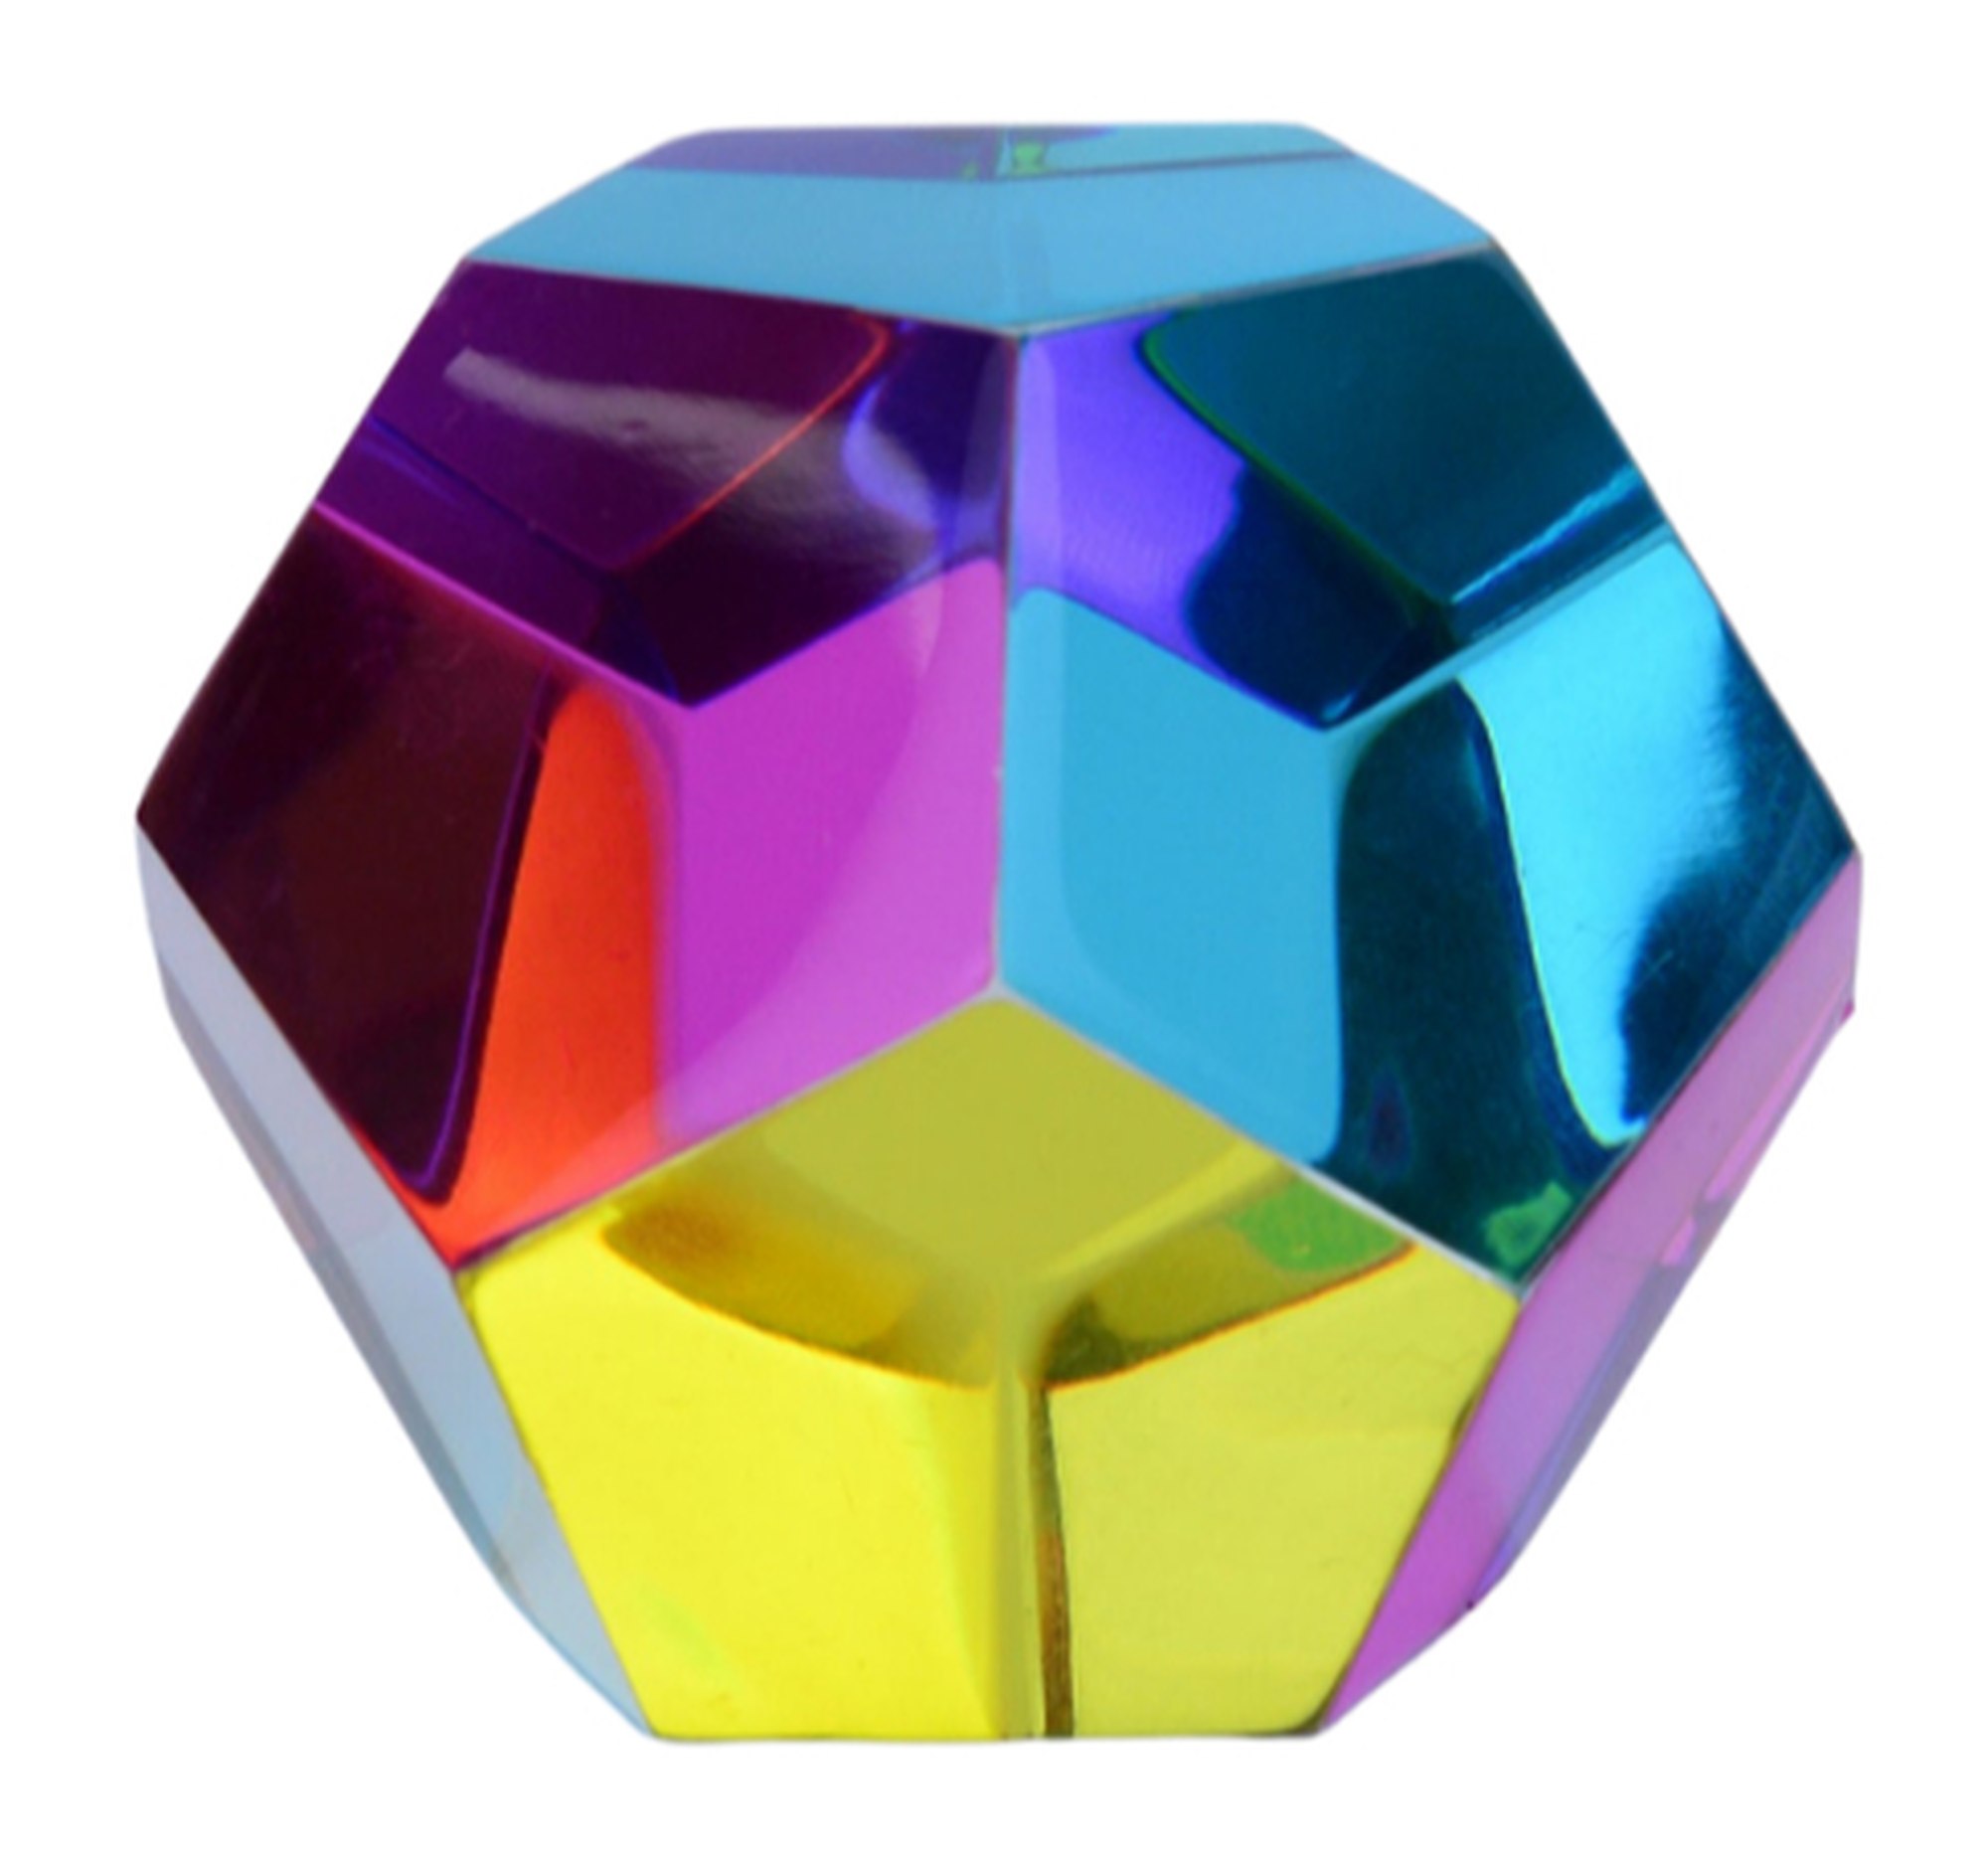 Dispersionsprisma "CMY Cube: Der Mundus"